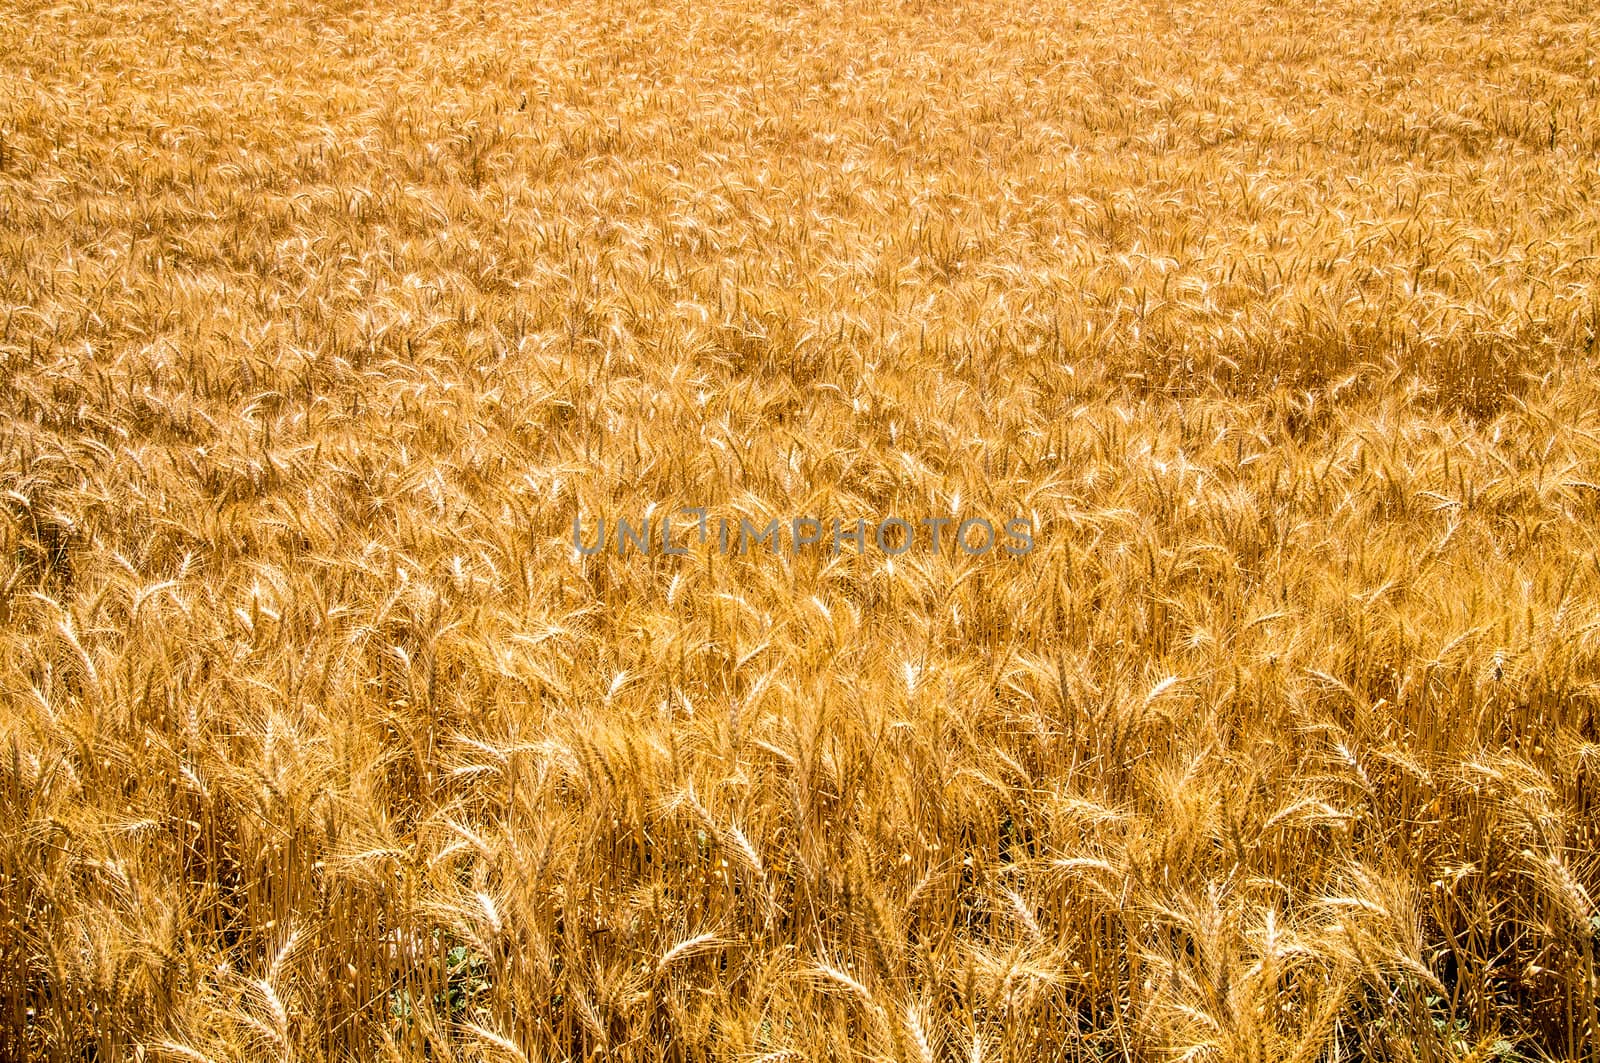 Golden wheat in Californian sunshine